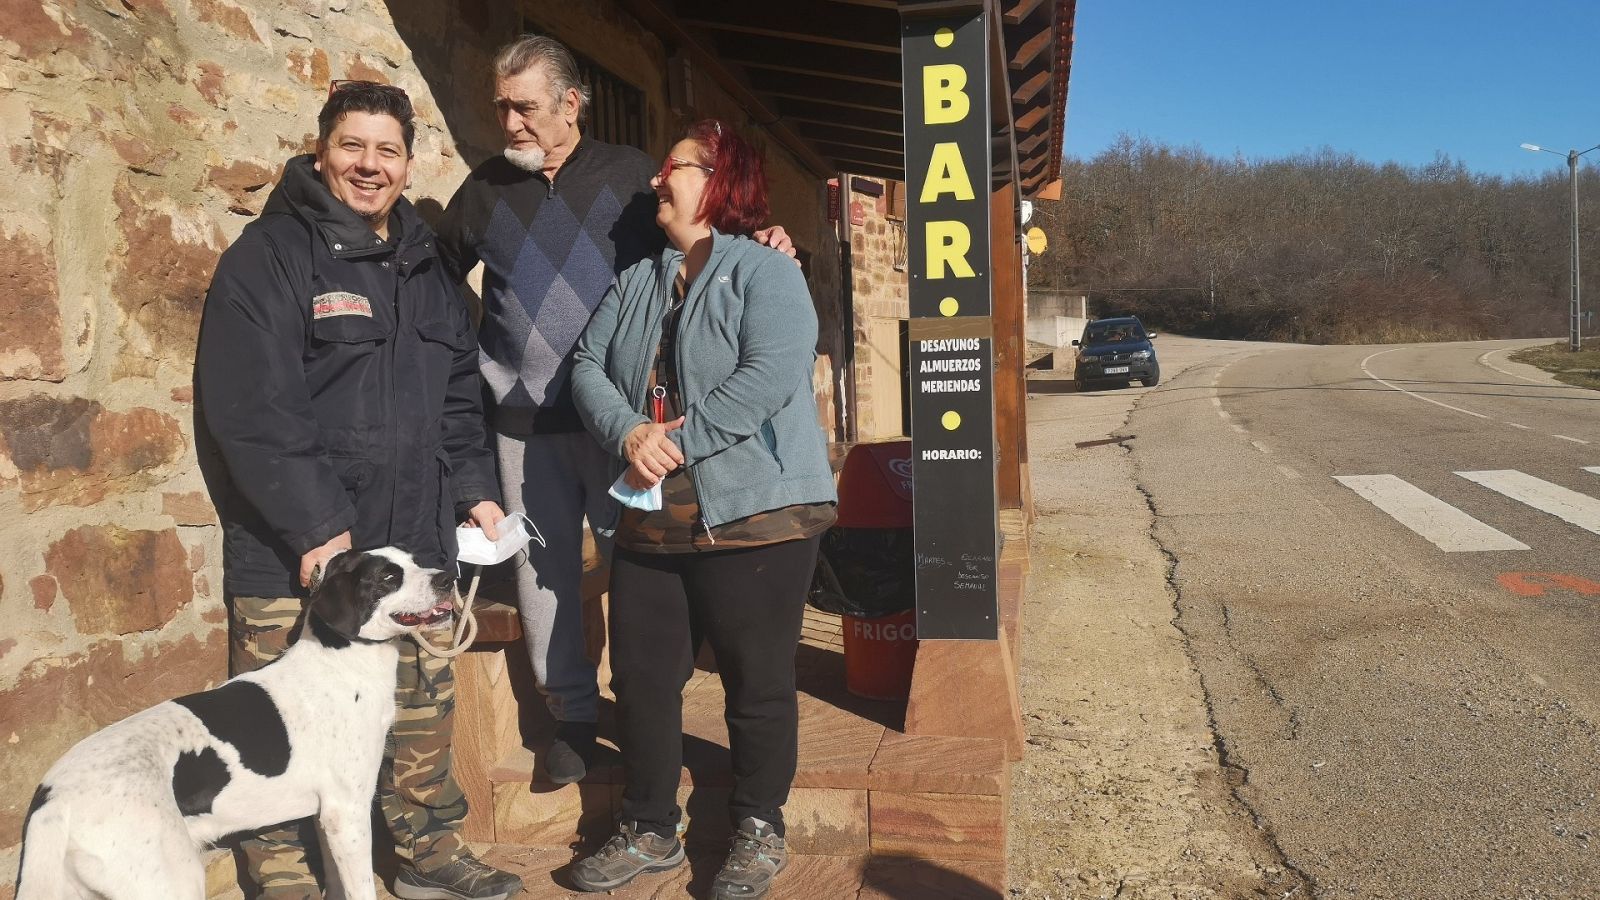 Sandra y su familia llegaron a Alarcia (Burgos) gracias a un programa de repoblación y ahora regentan el bar del pueblo